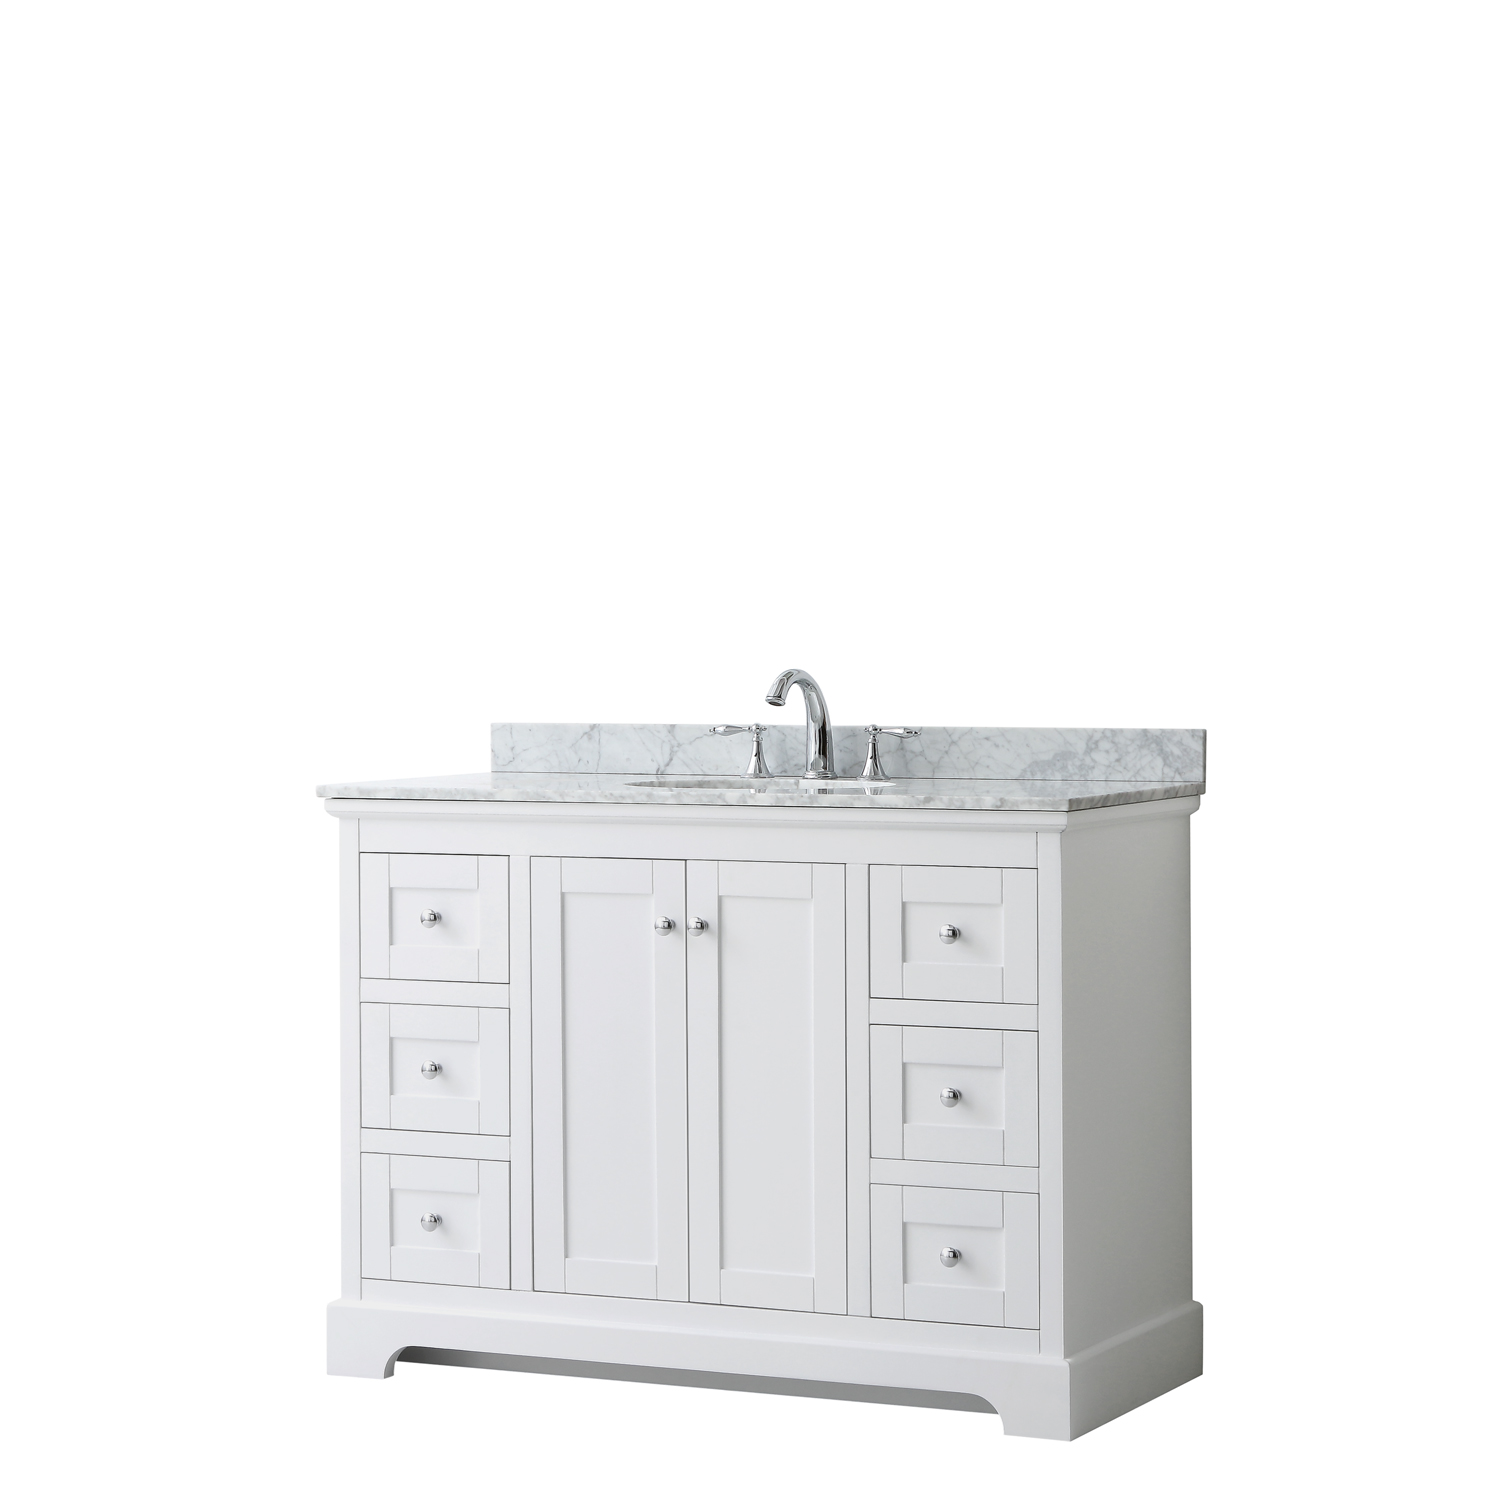 48" Single Bathroom Vanity in White, No Countertop, No Sink, and No Mirror